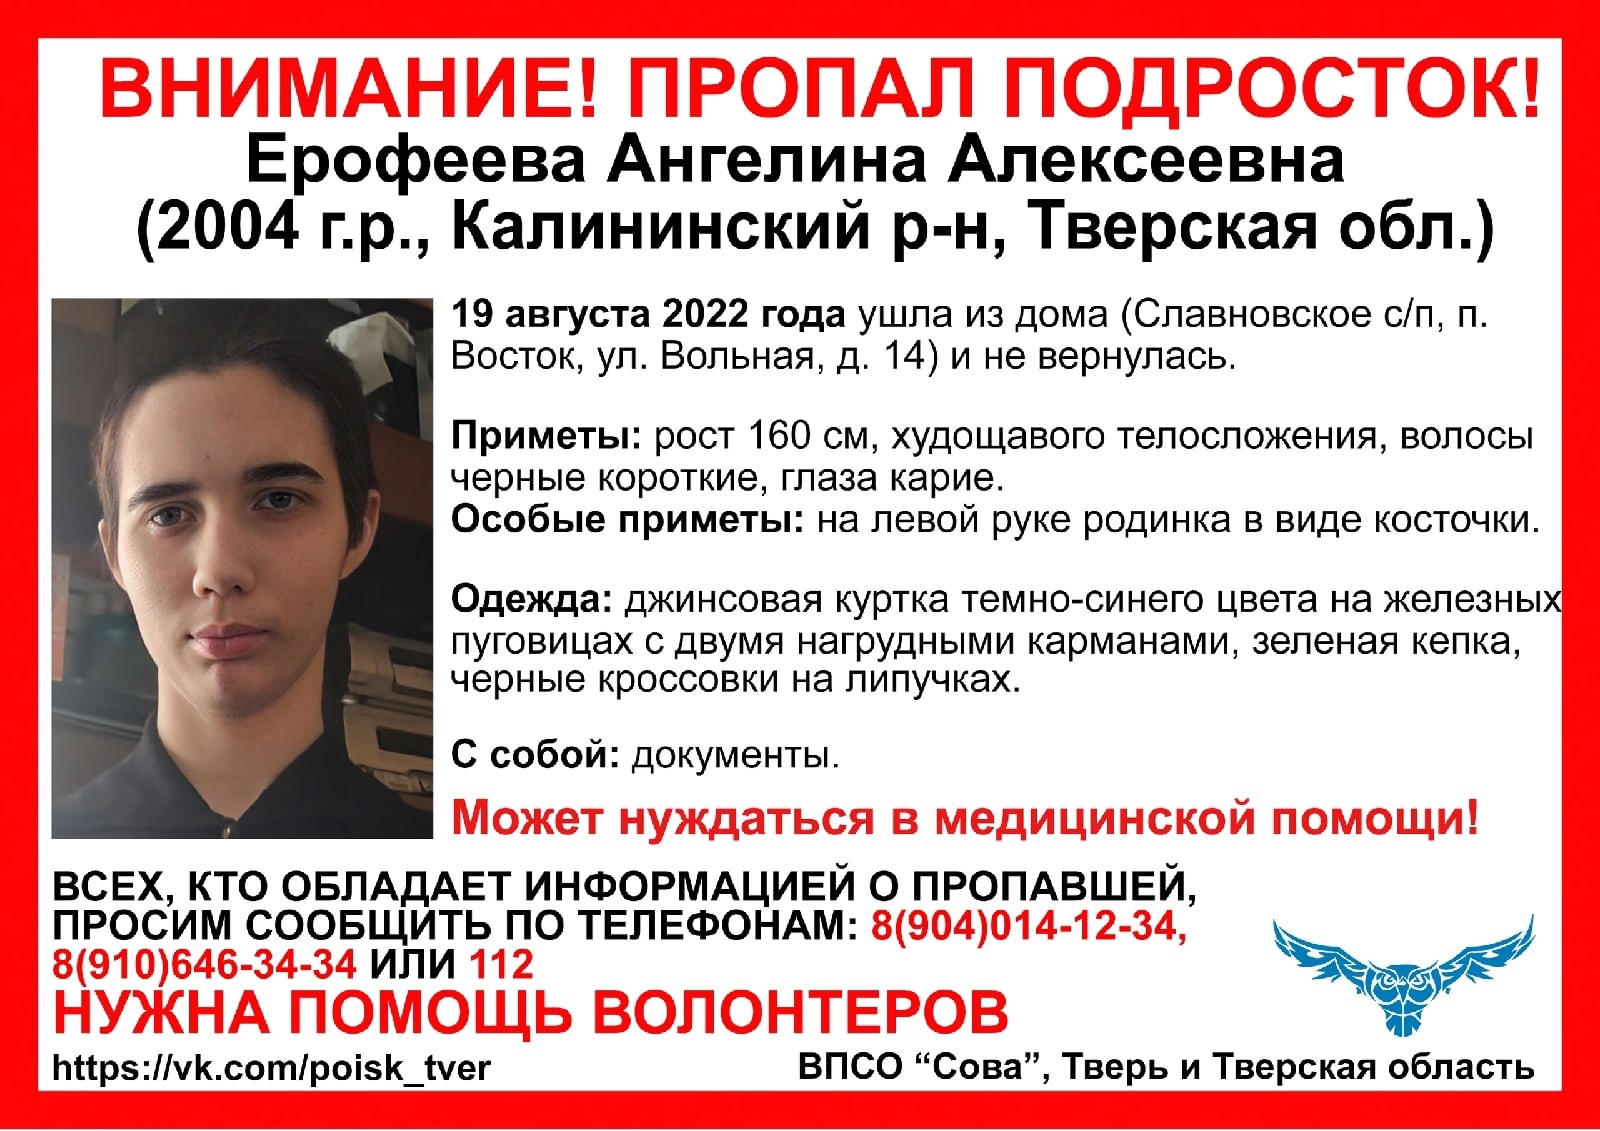 В Тверской области пропала 17-летняя девушка с родинкой в виде косточки на руке